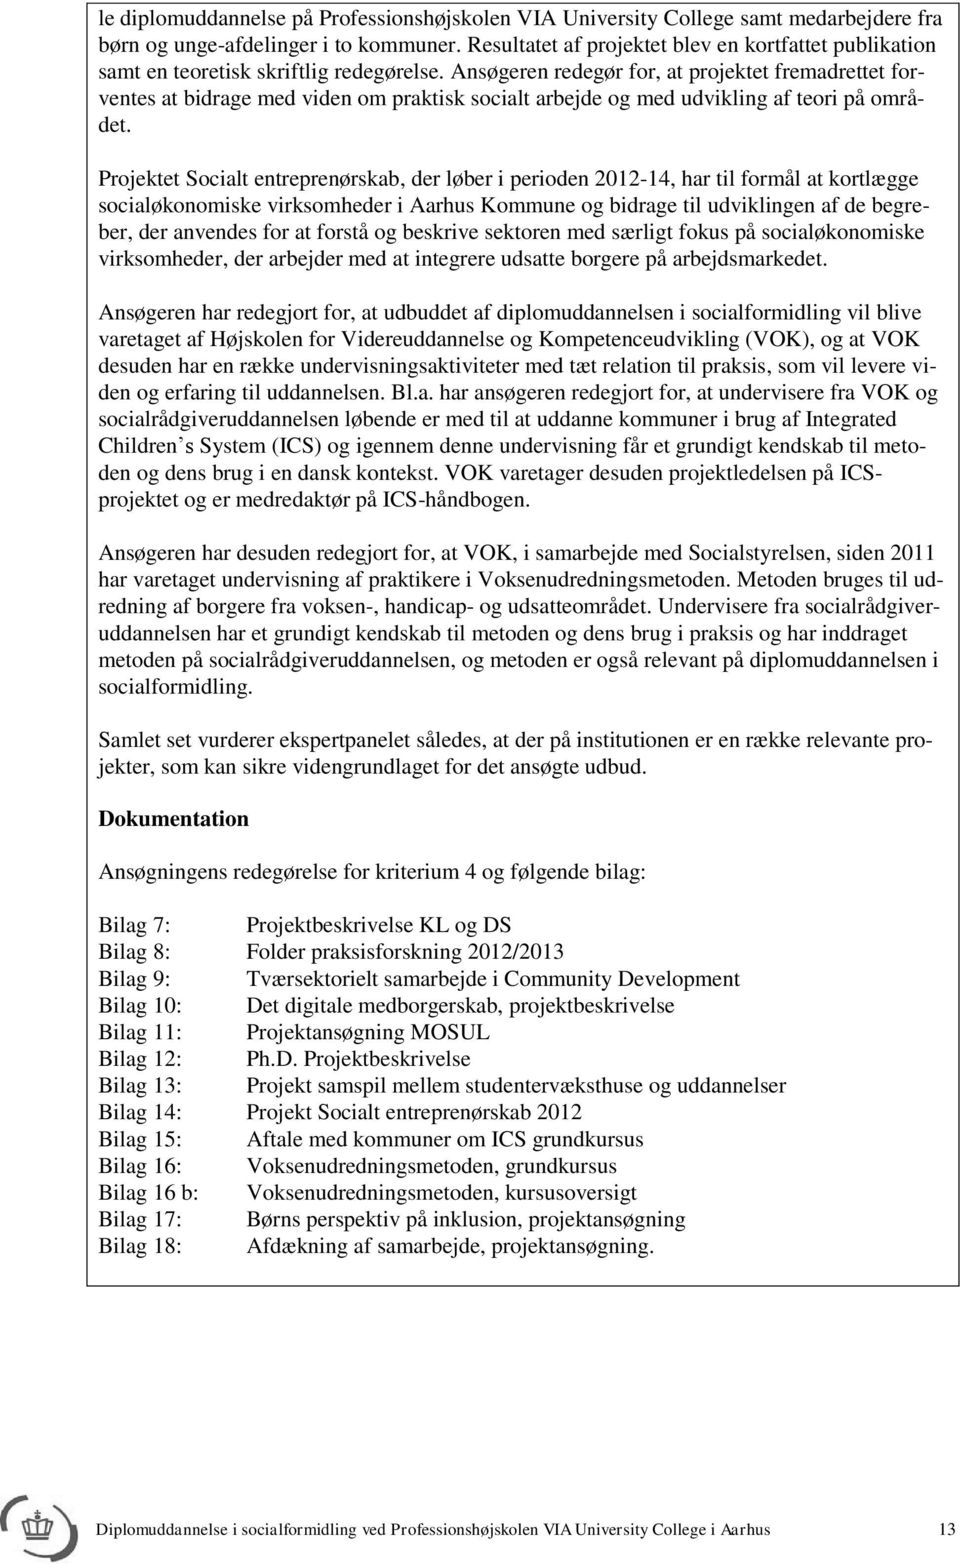 Diplomuddannelse i socialformidling ved Professionshøjskolen VIA University  College i Aarhus - PDF Gratis download